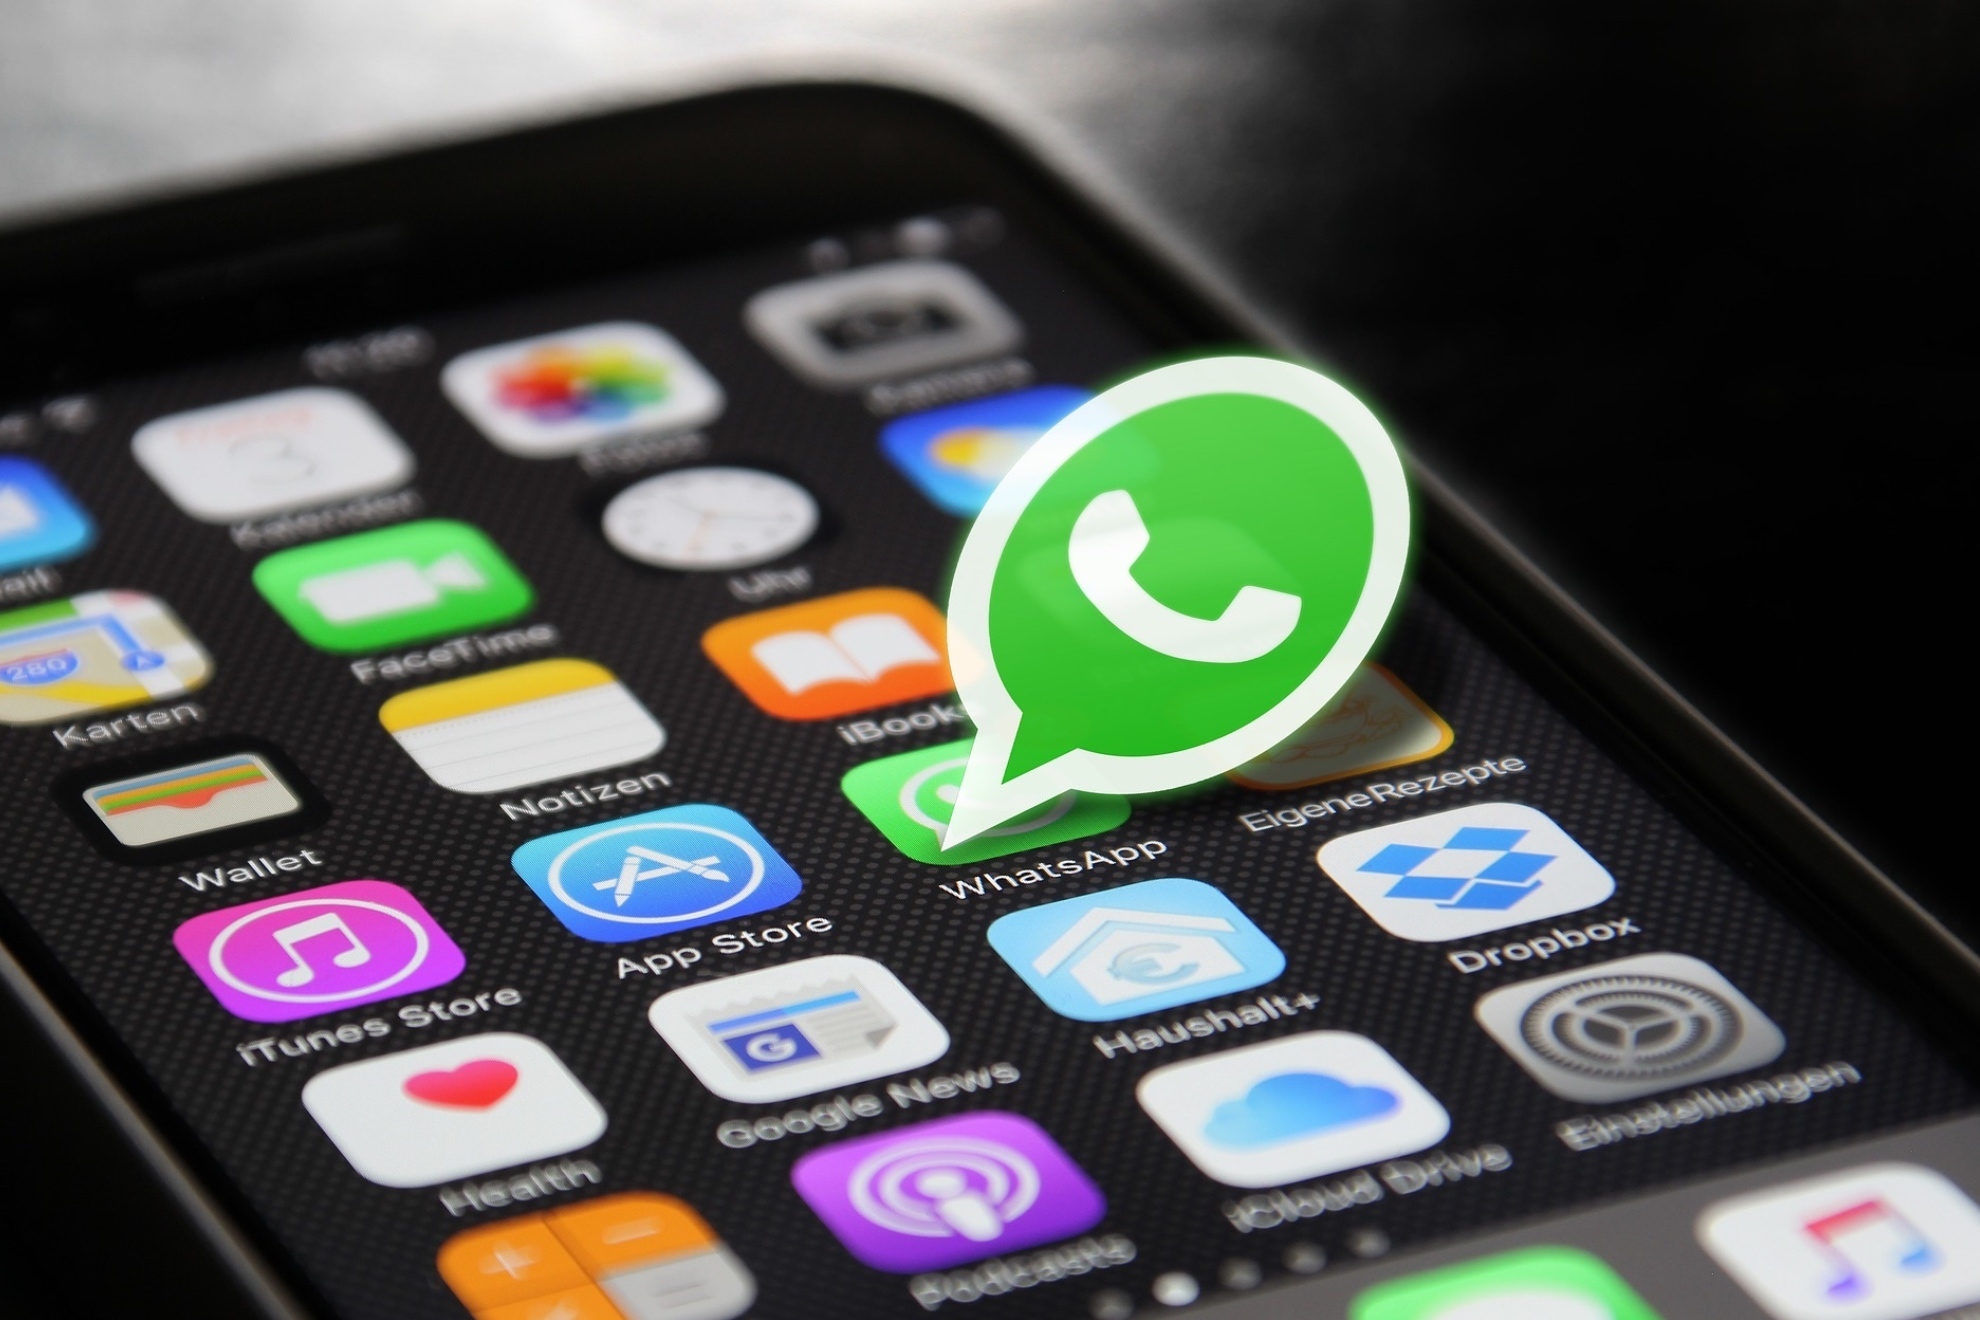 Vídeos circulares en WhatsApp: ¿cómo mandar audios con vídeo con la nueva función?